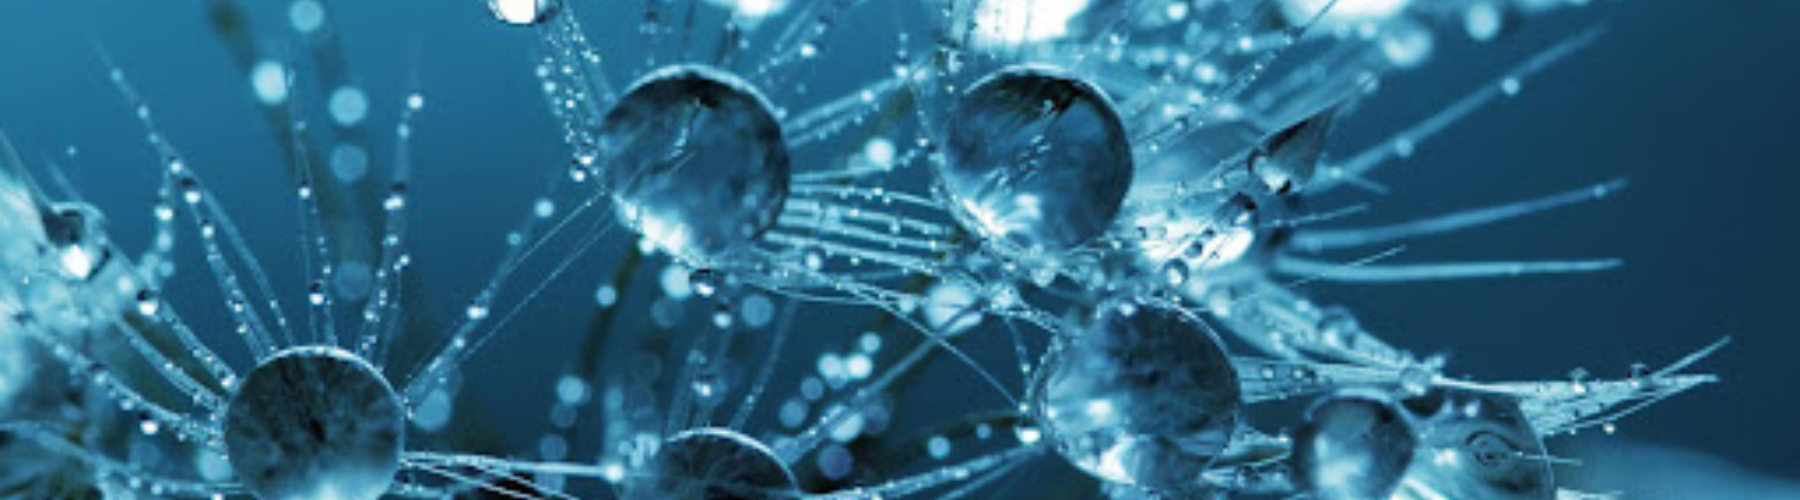 BioTech Newsletter